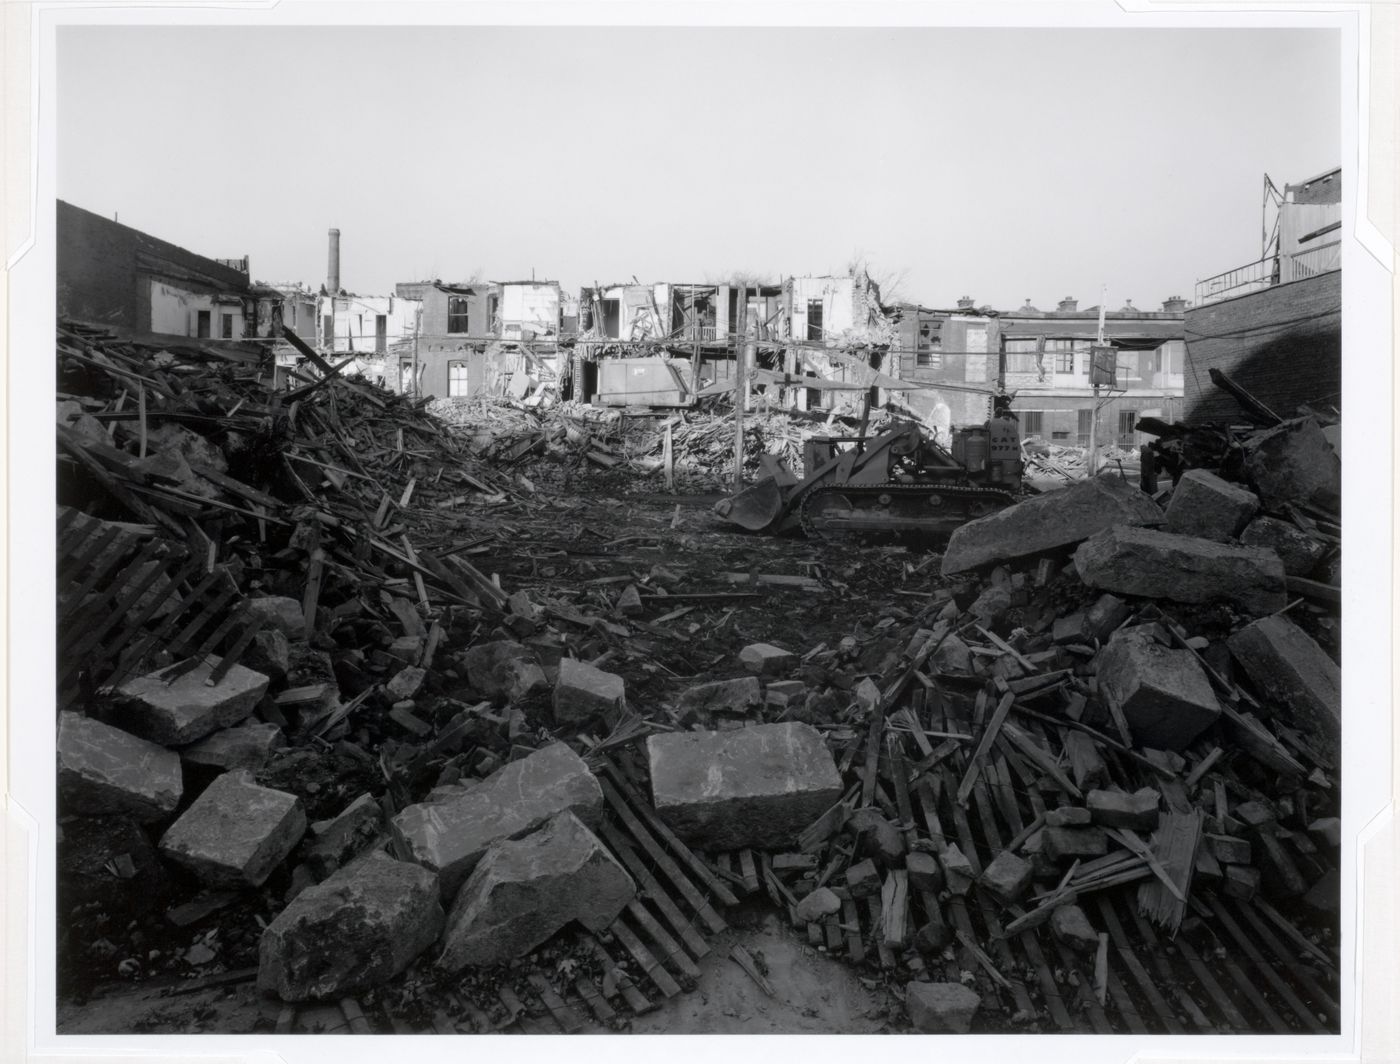 Milton Park Project: Demolition of Hutchison and Park Avenue below Prince Arthur looking east, Montréal, Québec